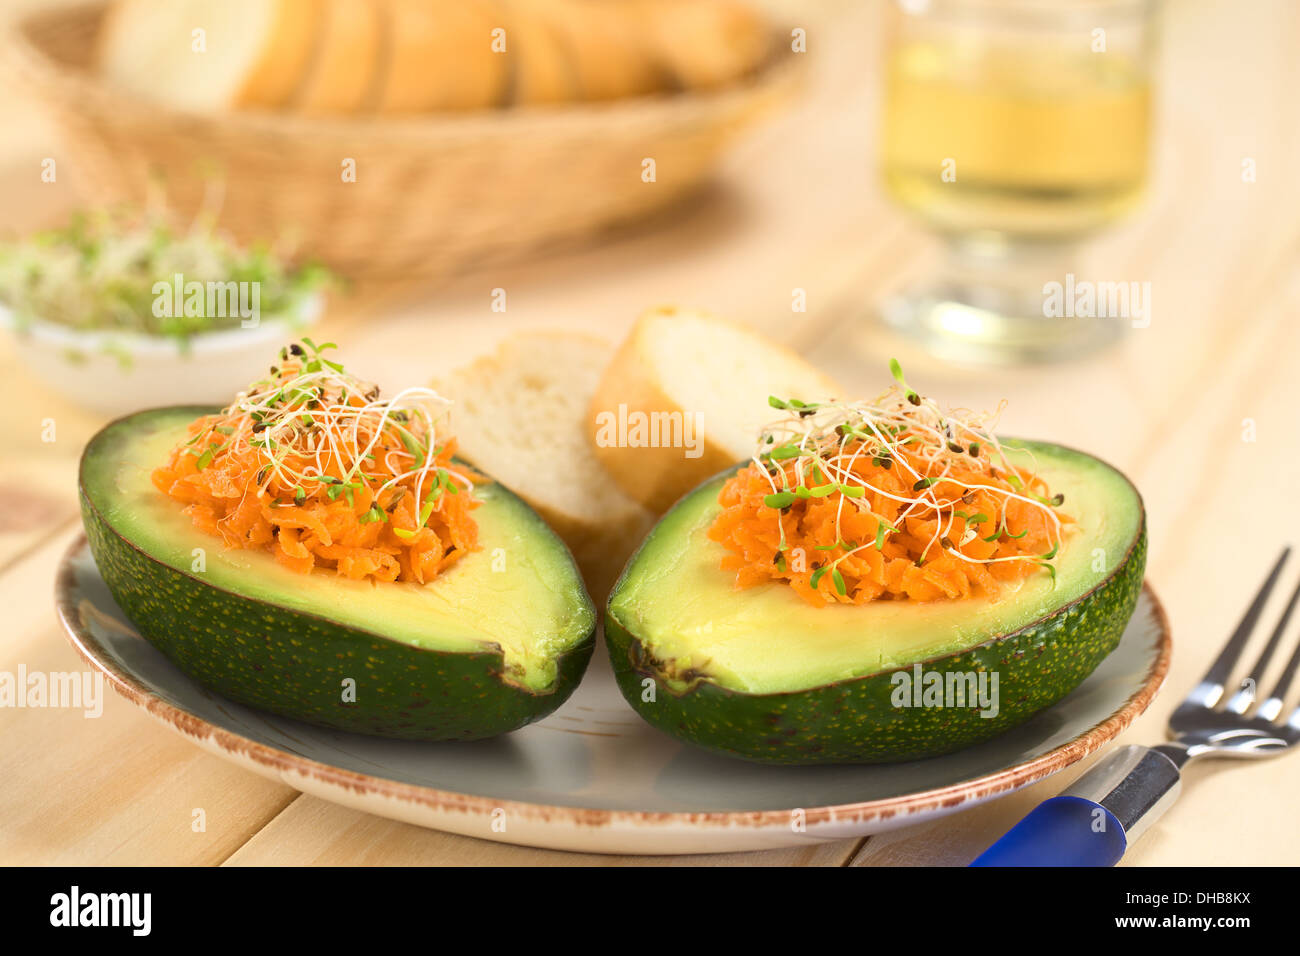 Metà di Avocado riempito con carote grattugiate e cosparso di germogli alfalfa servito sulla piastra con baguette fette Foto Stock